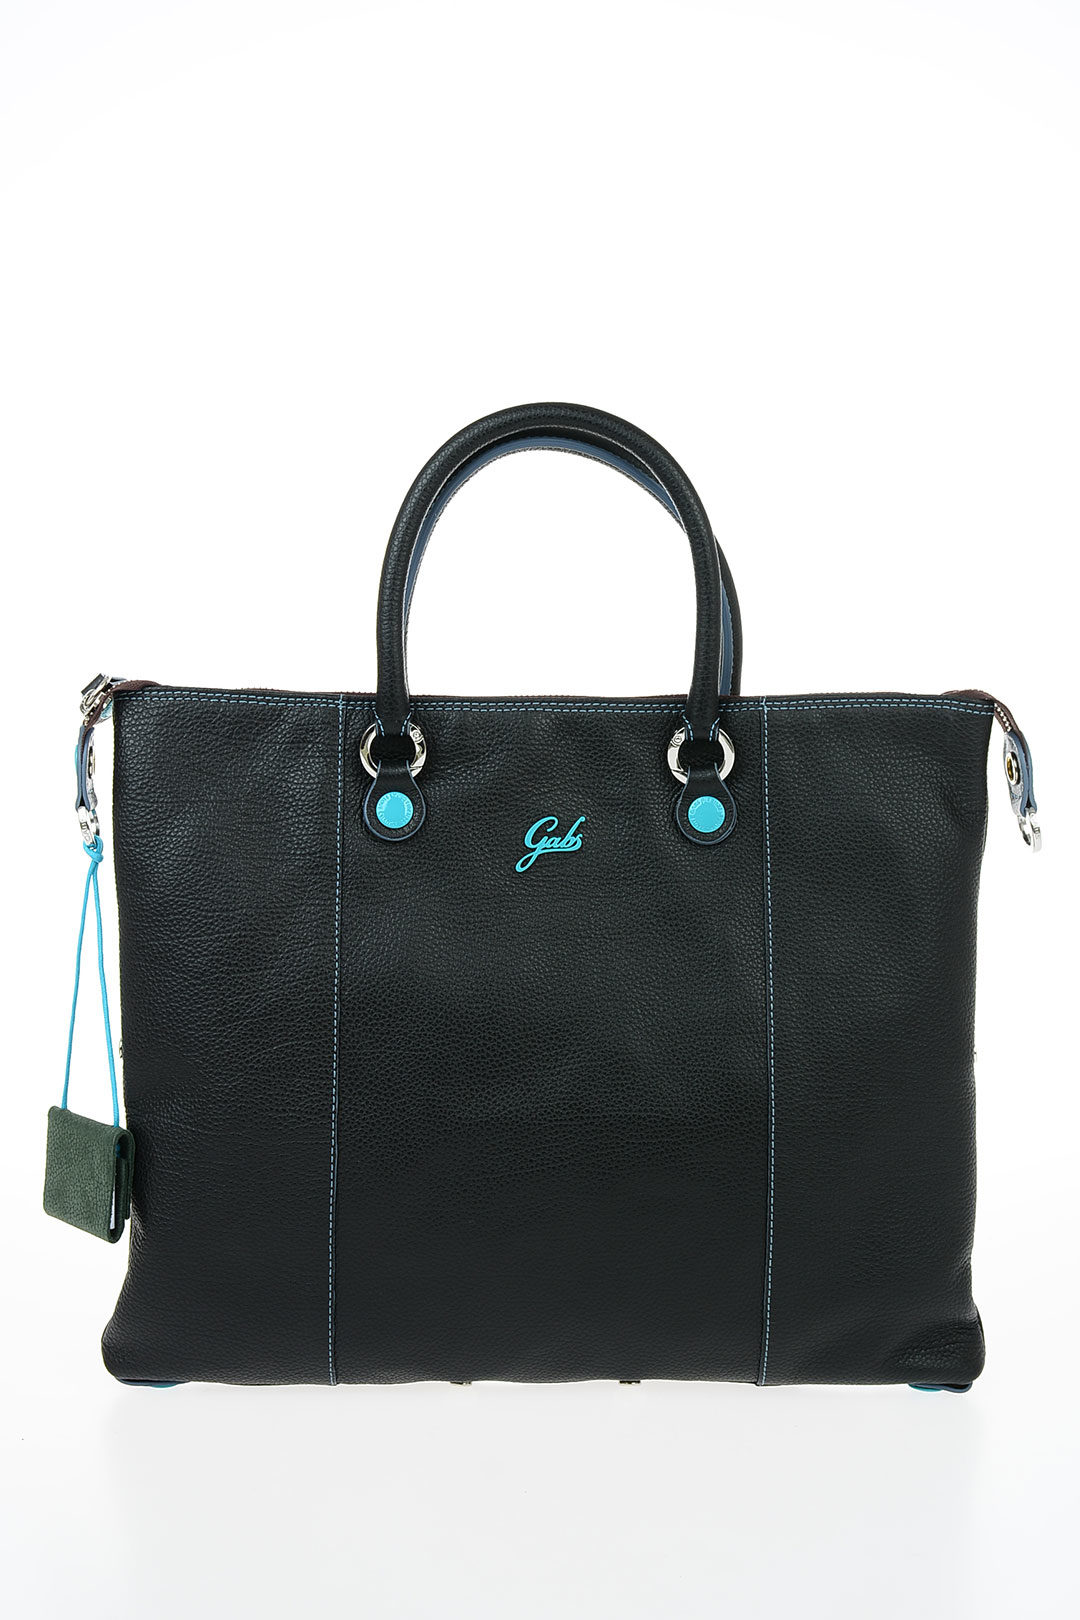 GABS women Handbags G3 PLUS Leather Bag M RUGA Black